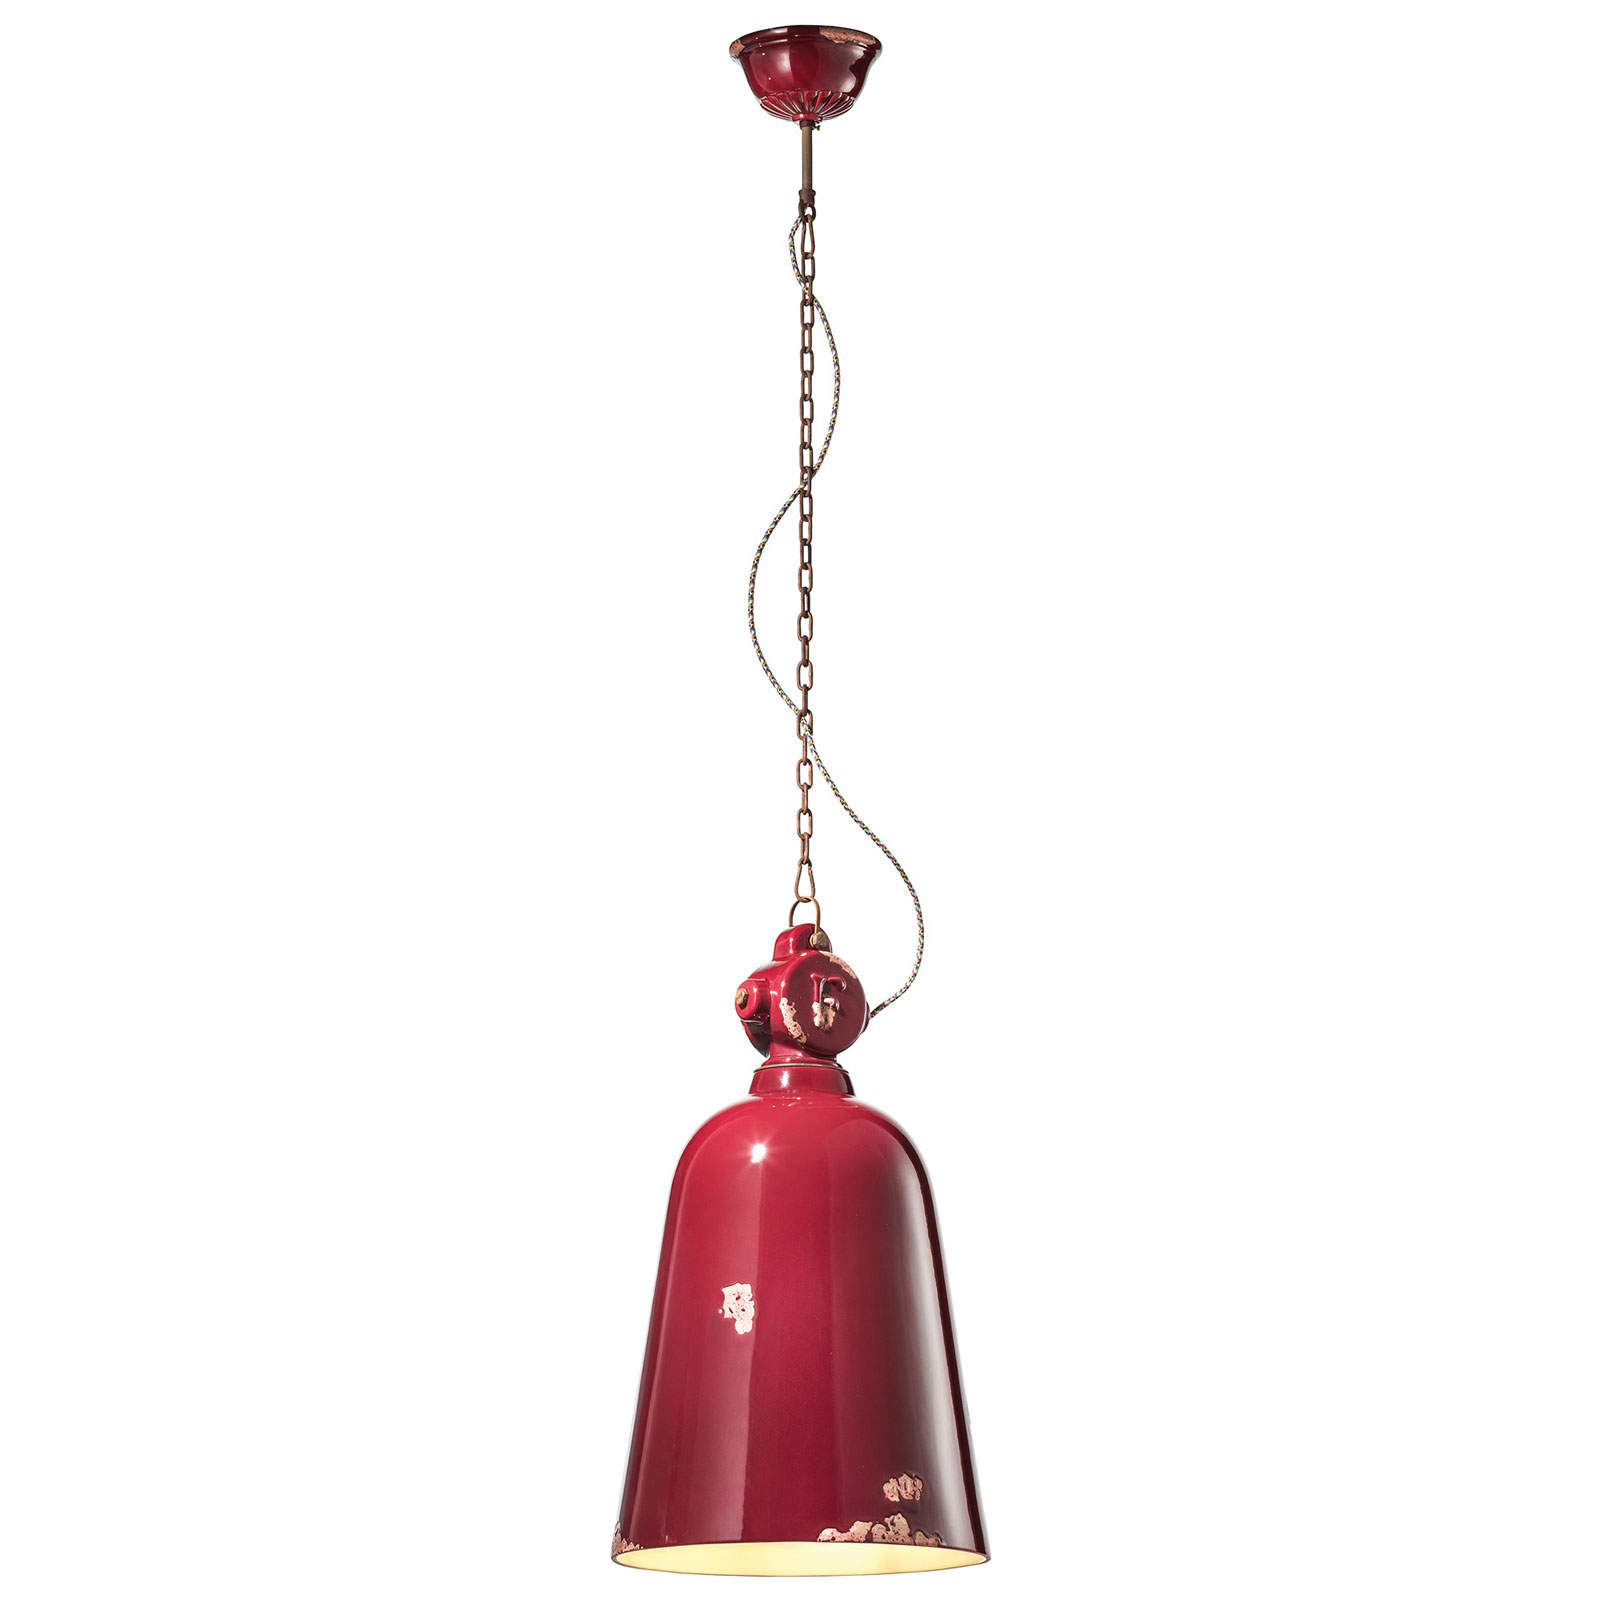 C1745 vintage hanging light, conical, bordeaux